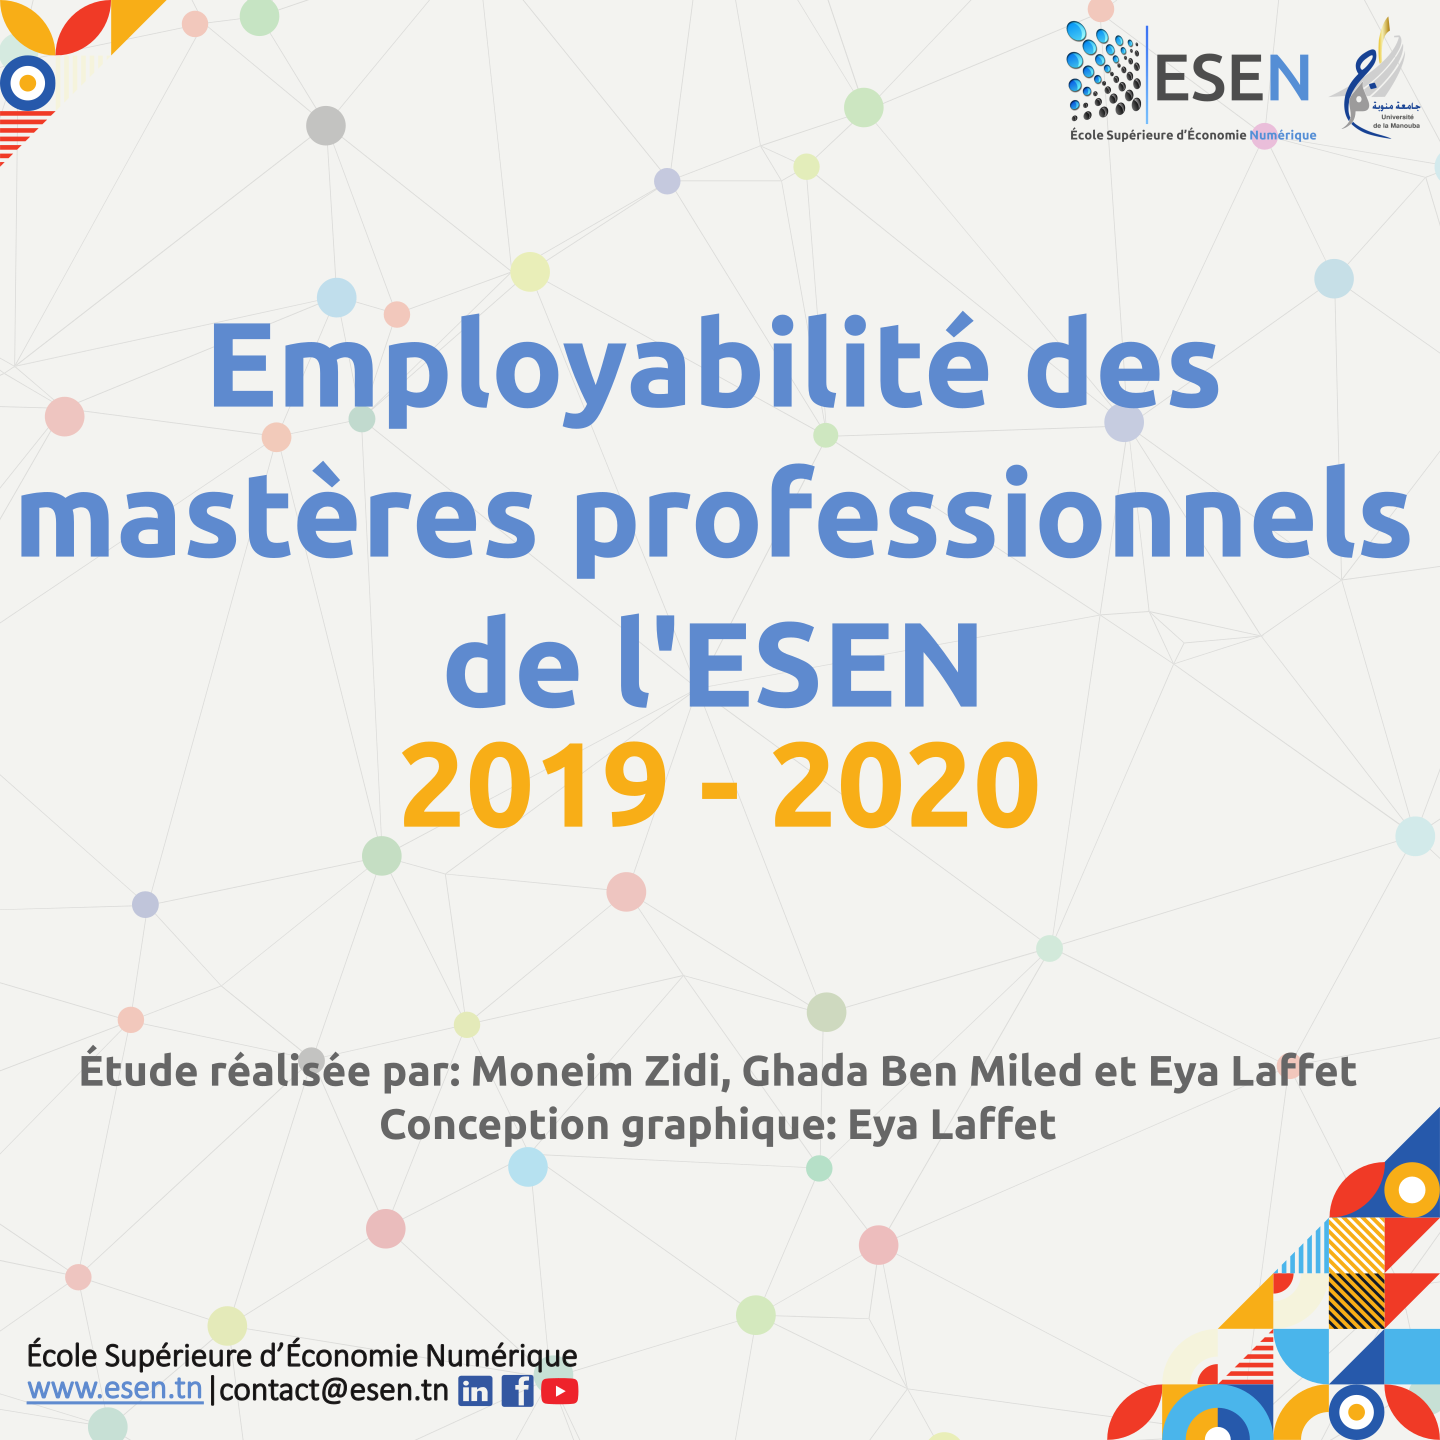 Mastères professionnels 2019-2020 | Étude de l'employabilité